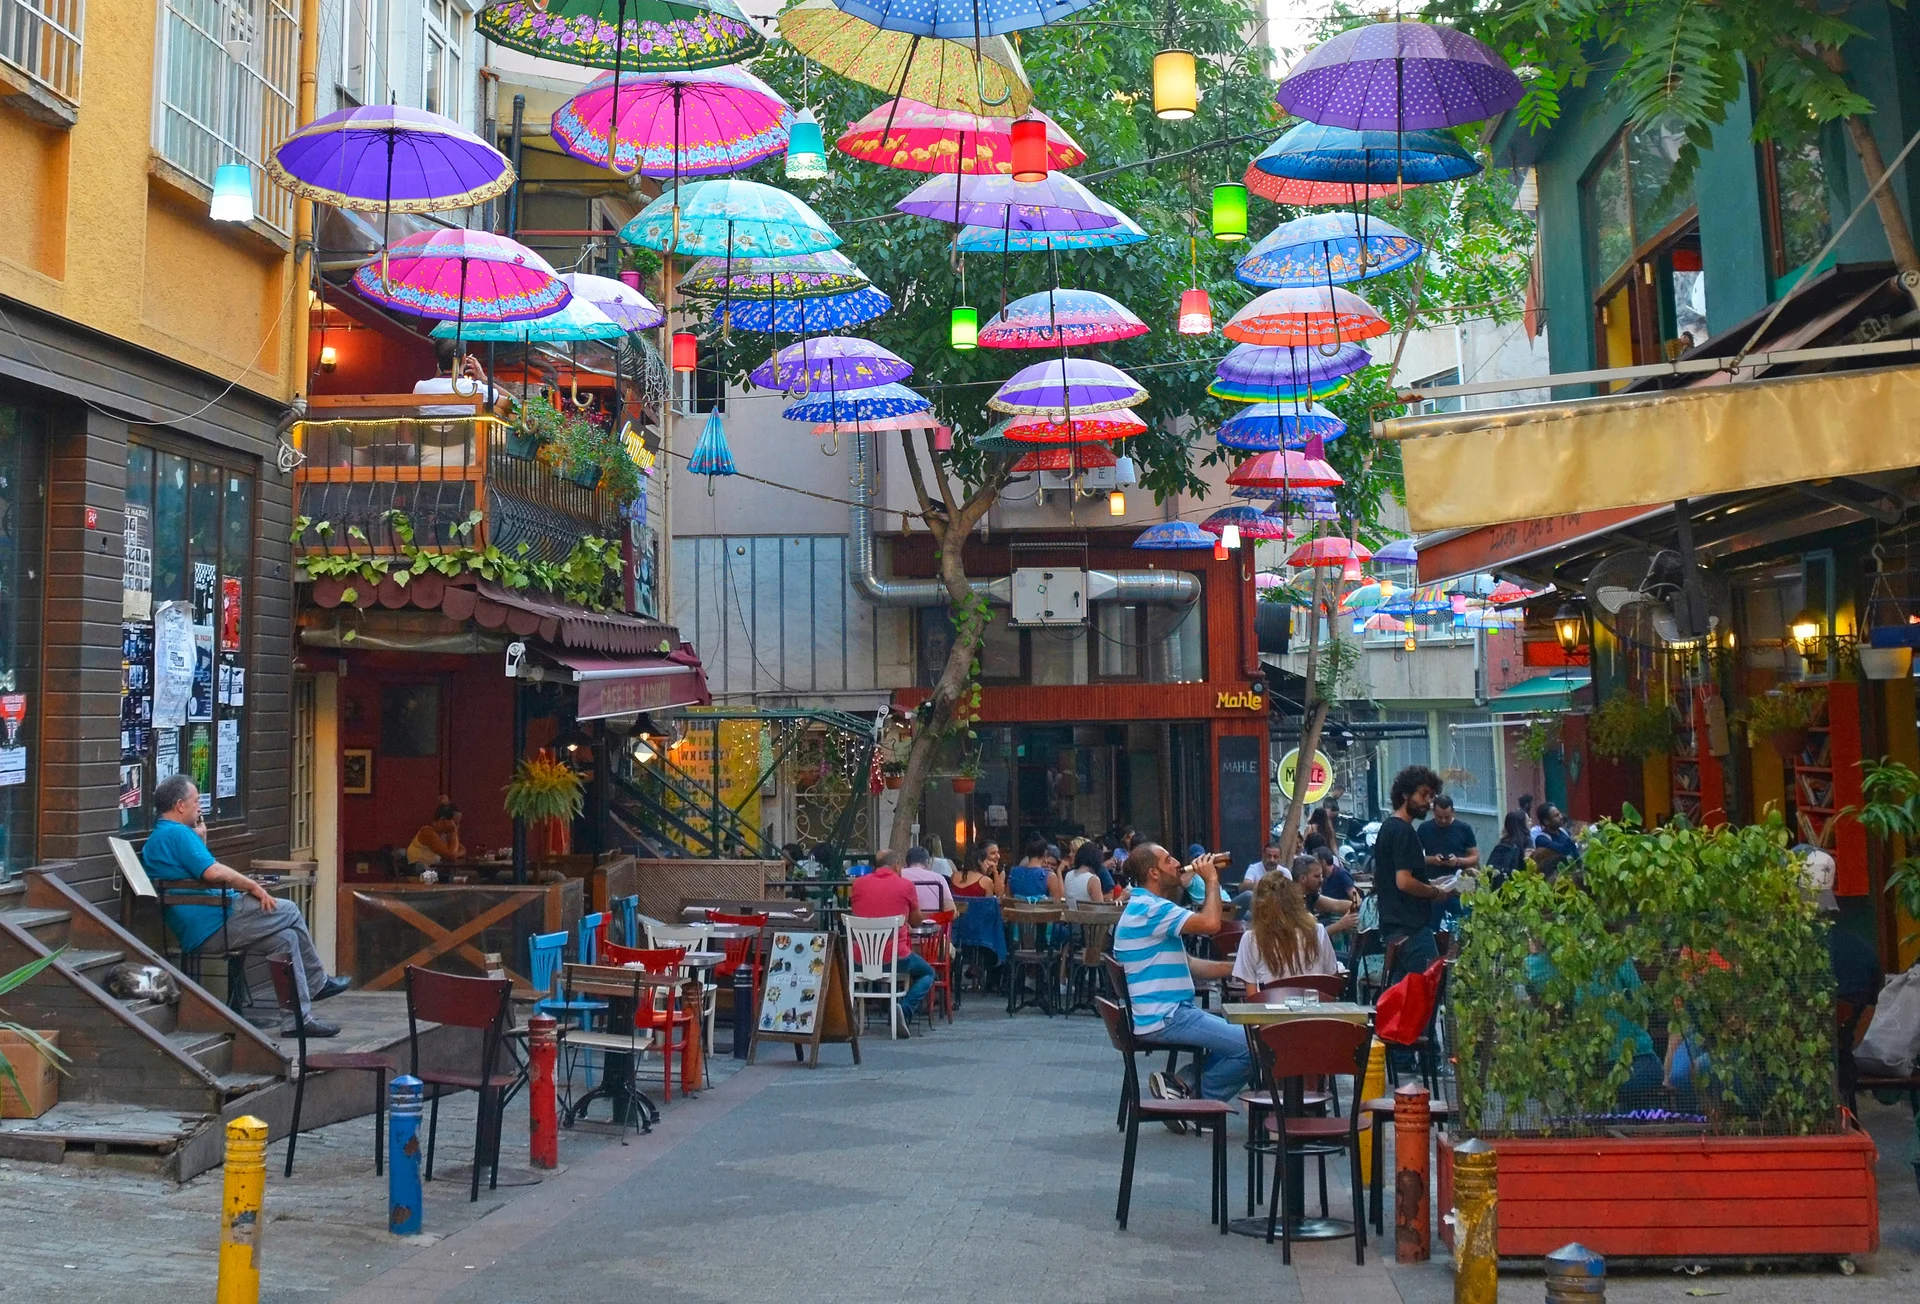 מטריות בברובע Kadakoy, איסטנבול Istanbul,,turkey, ,september,18th,2020.,colourful,umbrellas,hang,from